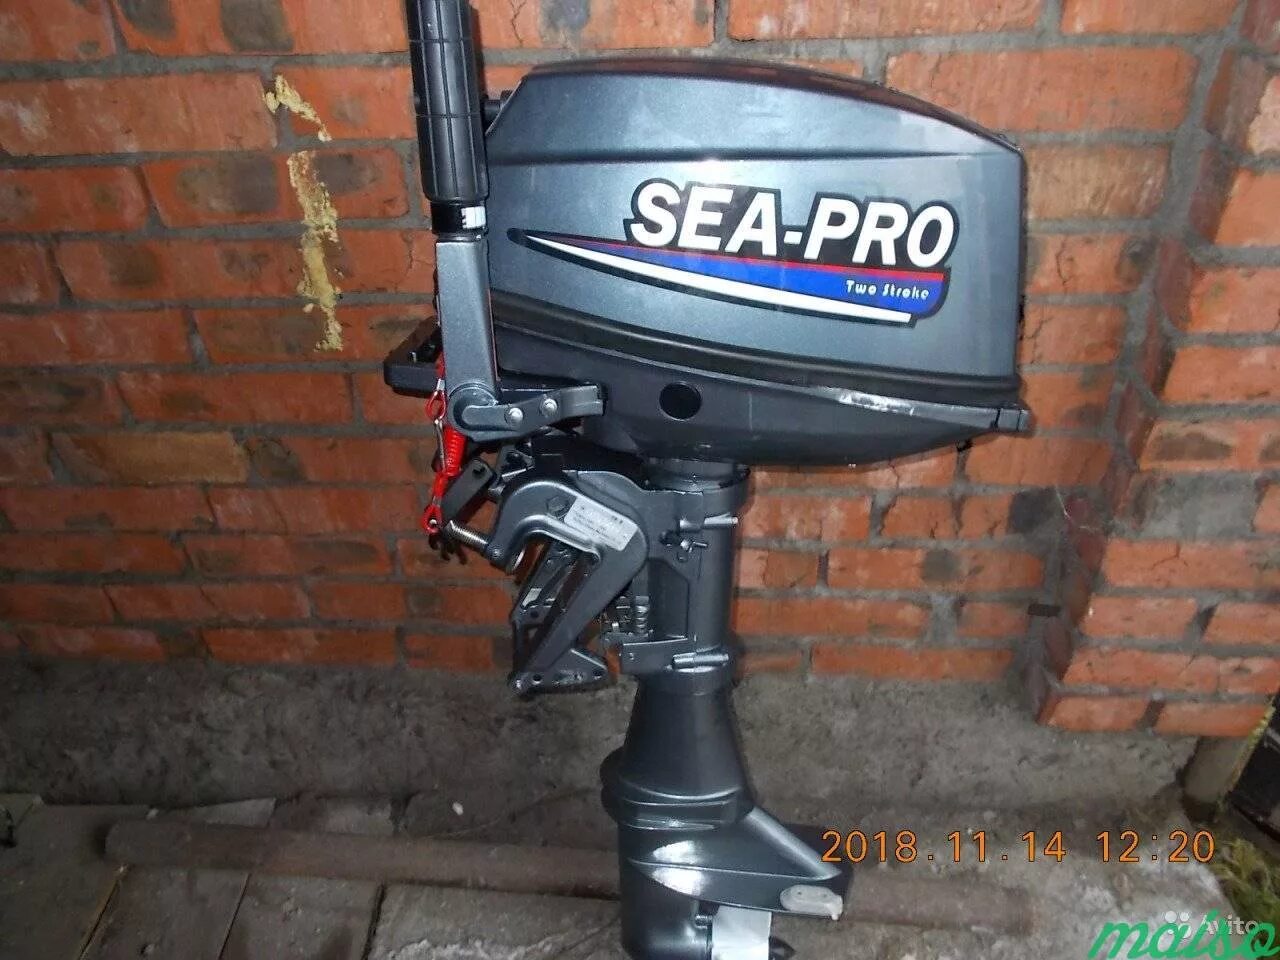 Sea Pro t 9.8s. Лодочный мотор Sea Pro t9.8. Лодочный мотор Sea-Pro t 9.8s. Лодочный мотор Sea Pro 9.8. Купить мотор 9.8 2 х